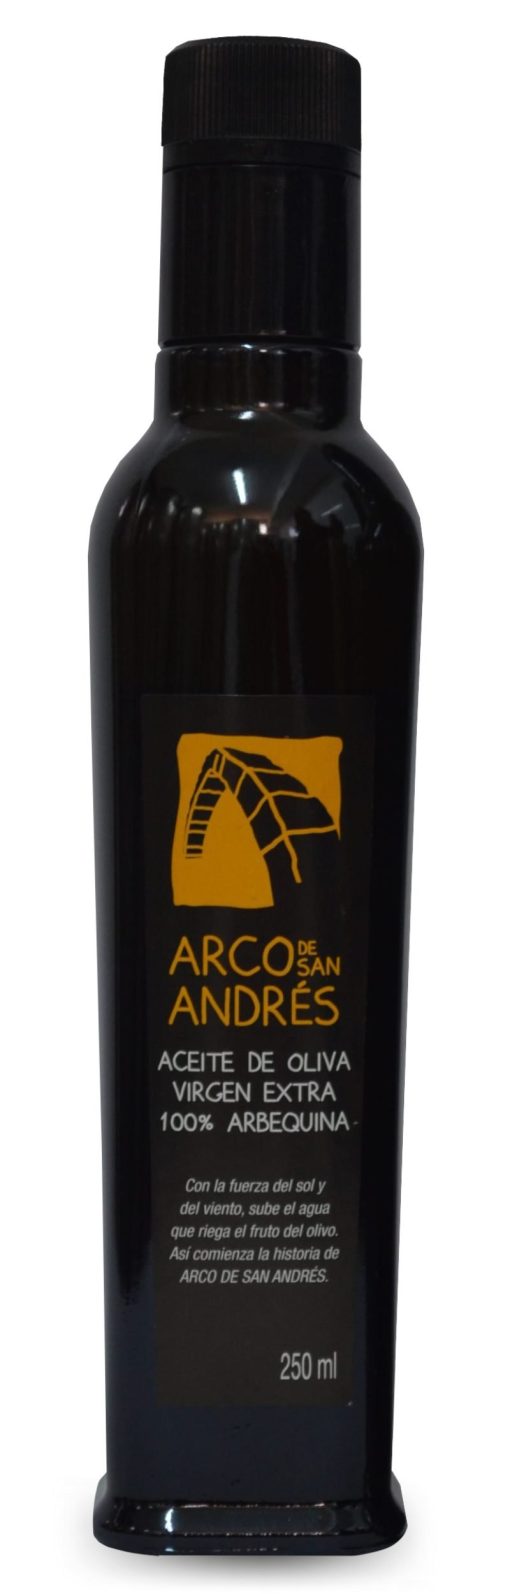 ArcoDeSanAndres AOVE Arbequino Botella 250ml LU 001 1671630846